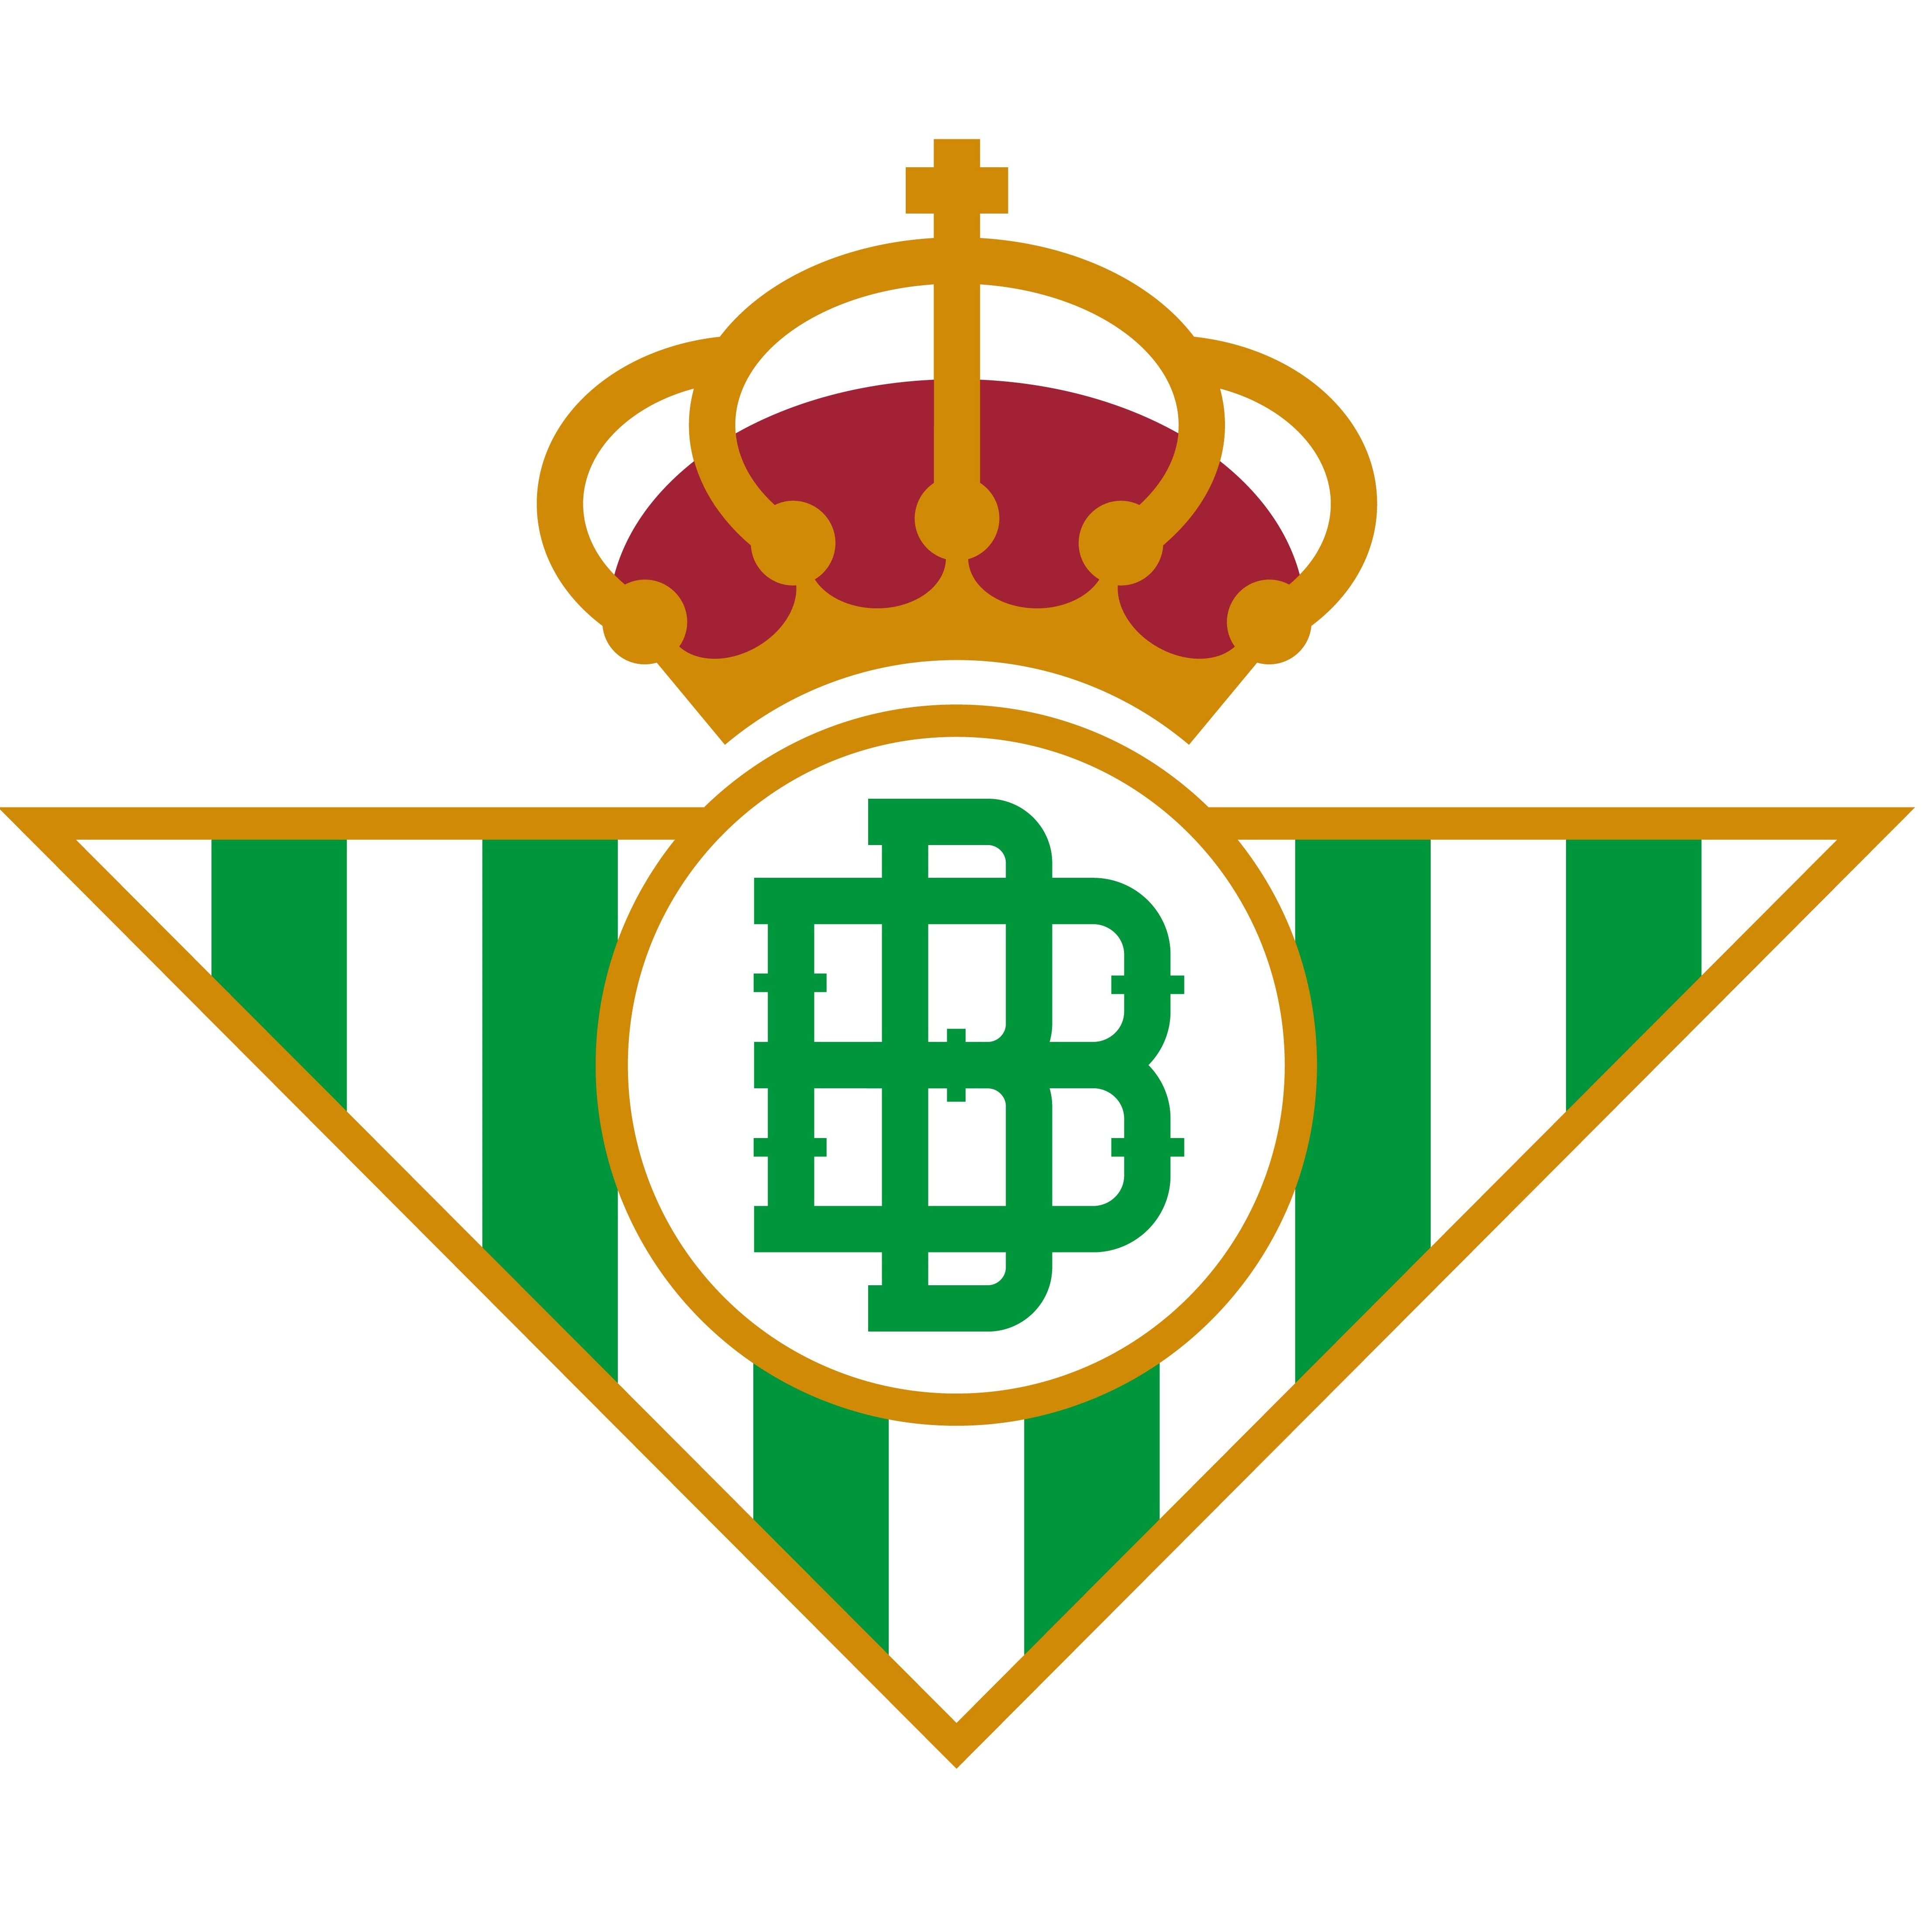 Escudo/Bandera Real Betis Fem